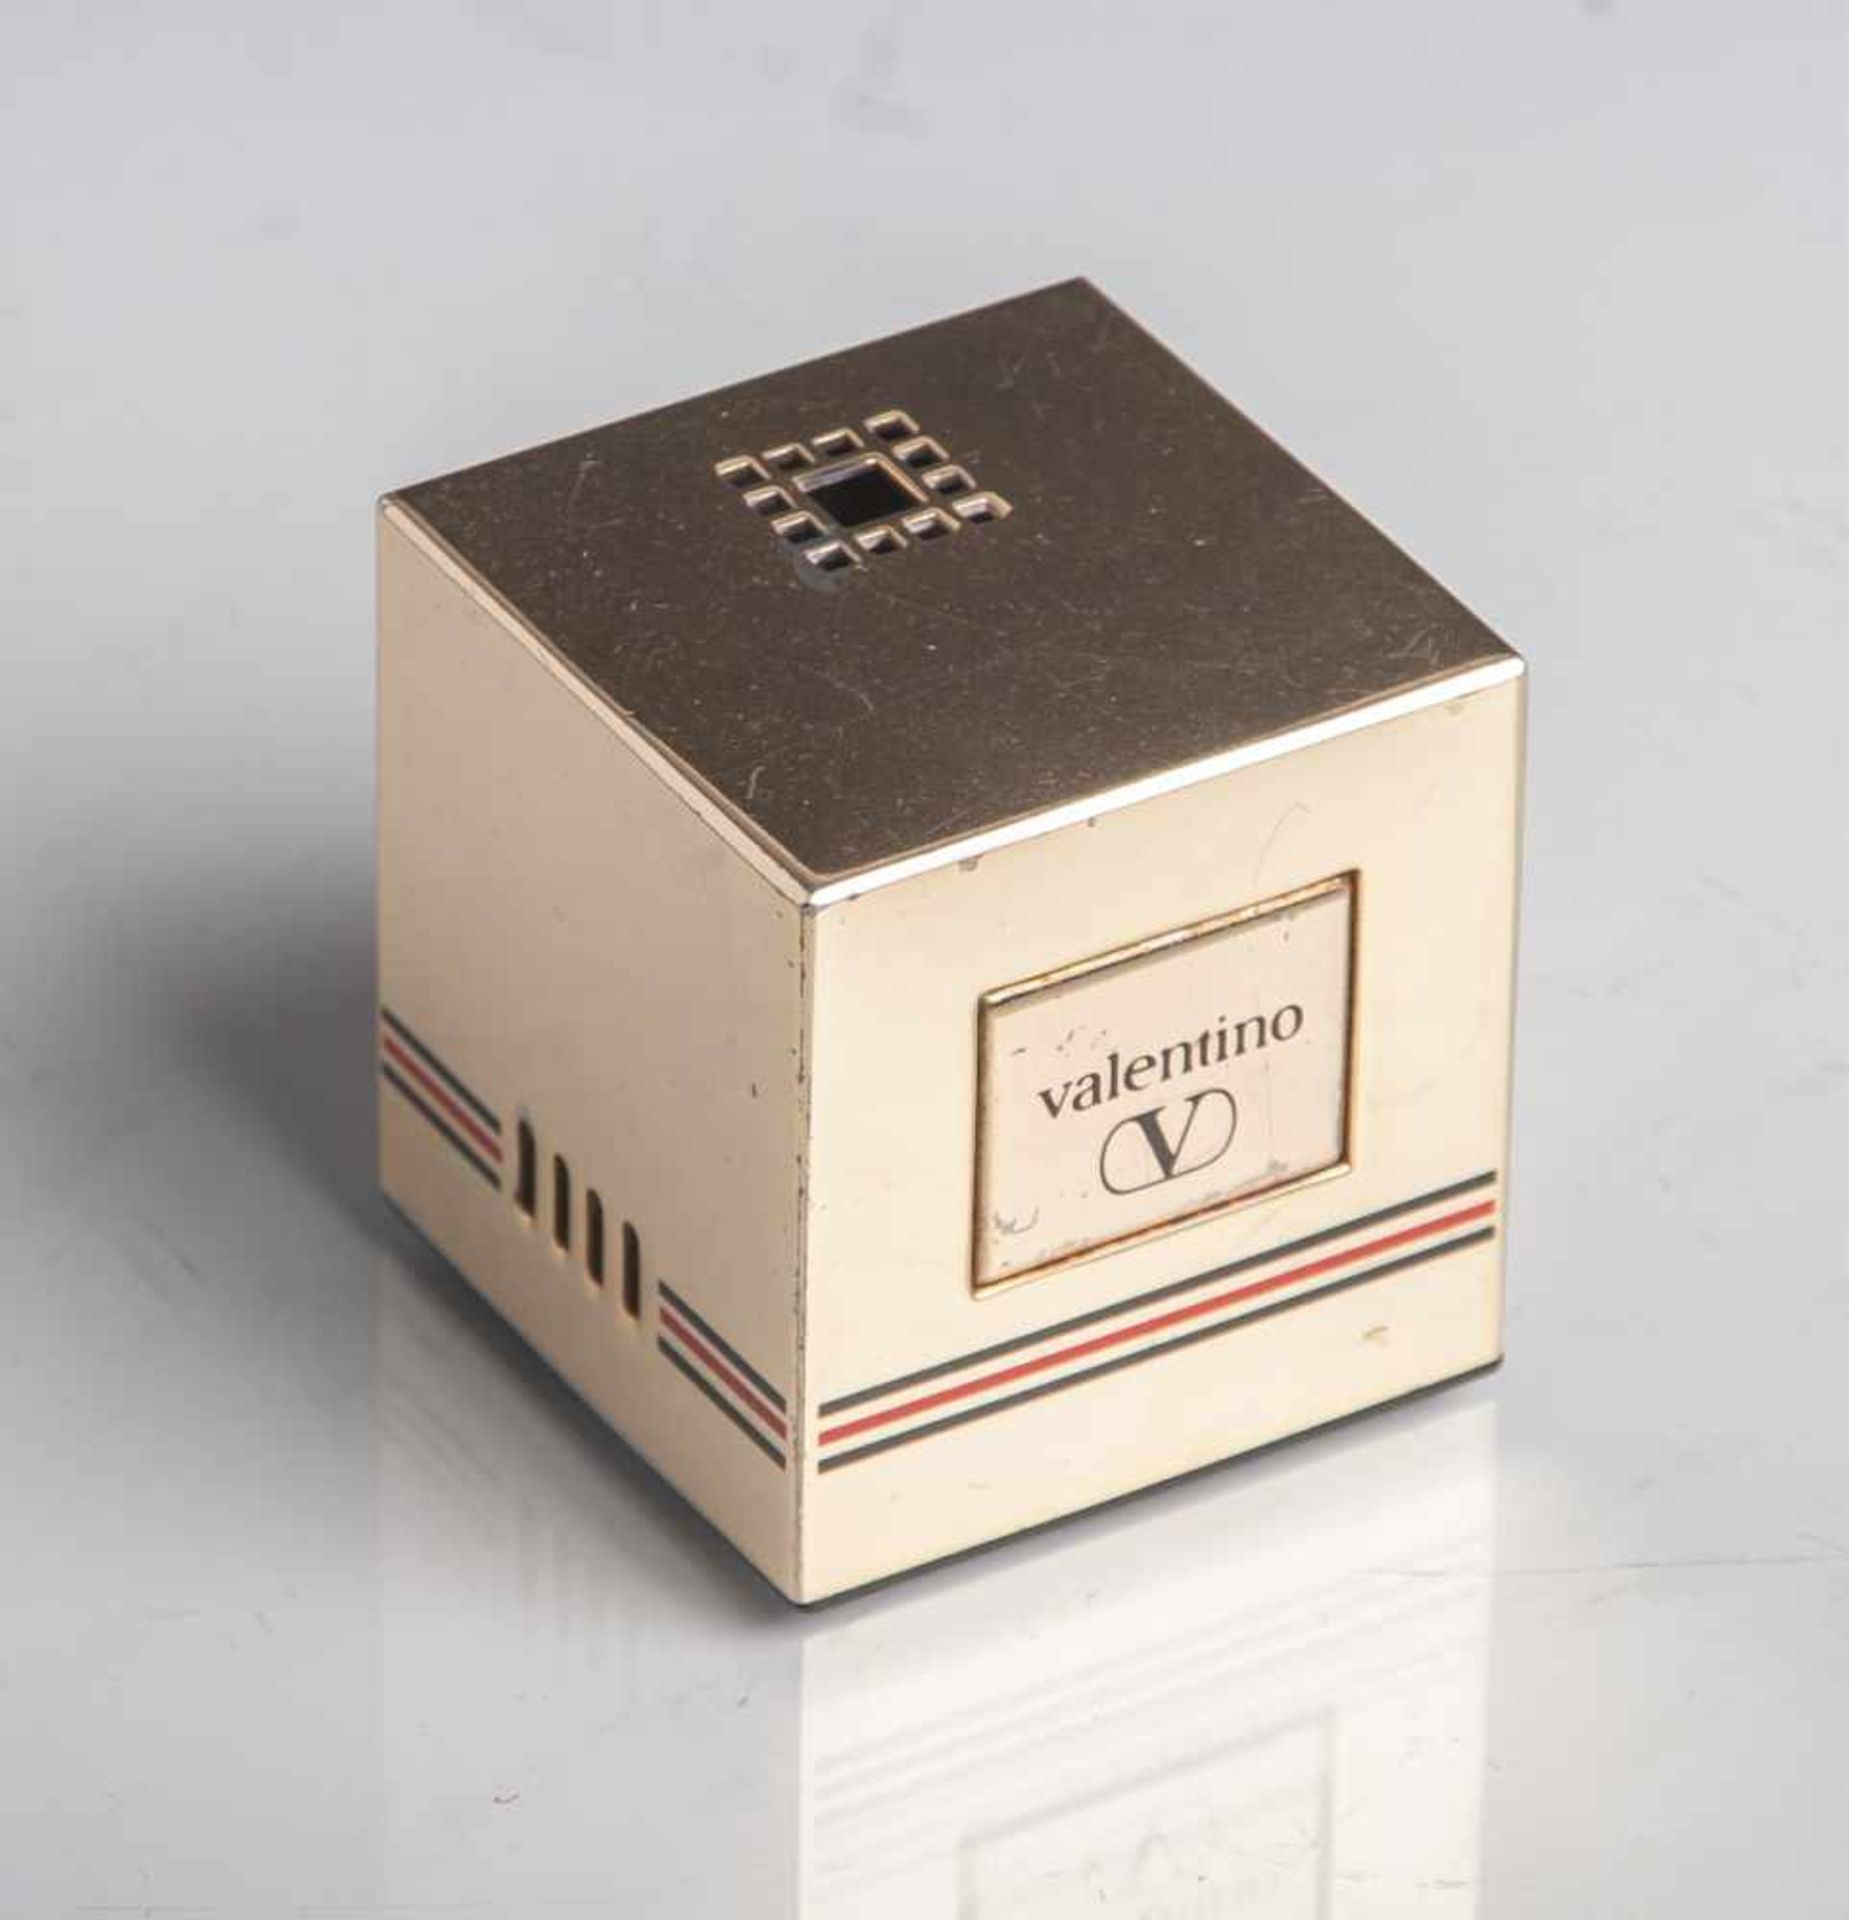 Tischfeuerzeug, Valentino, in Würfelform, Gas, funktionsfähig, Gehäuse Metall/vergoldet,ca. 5 x 5